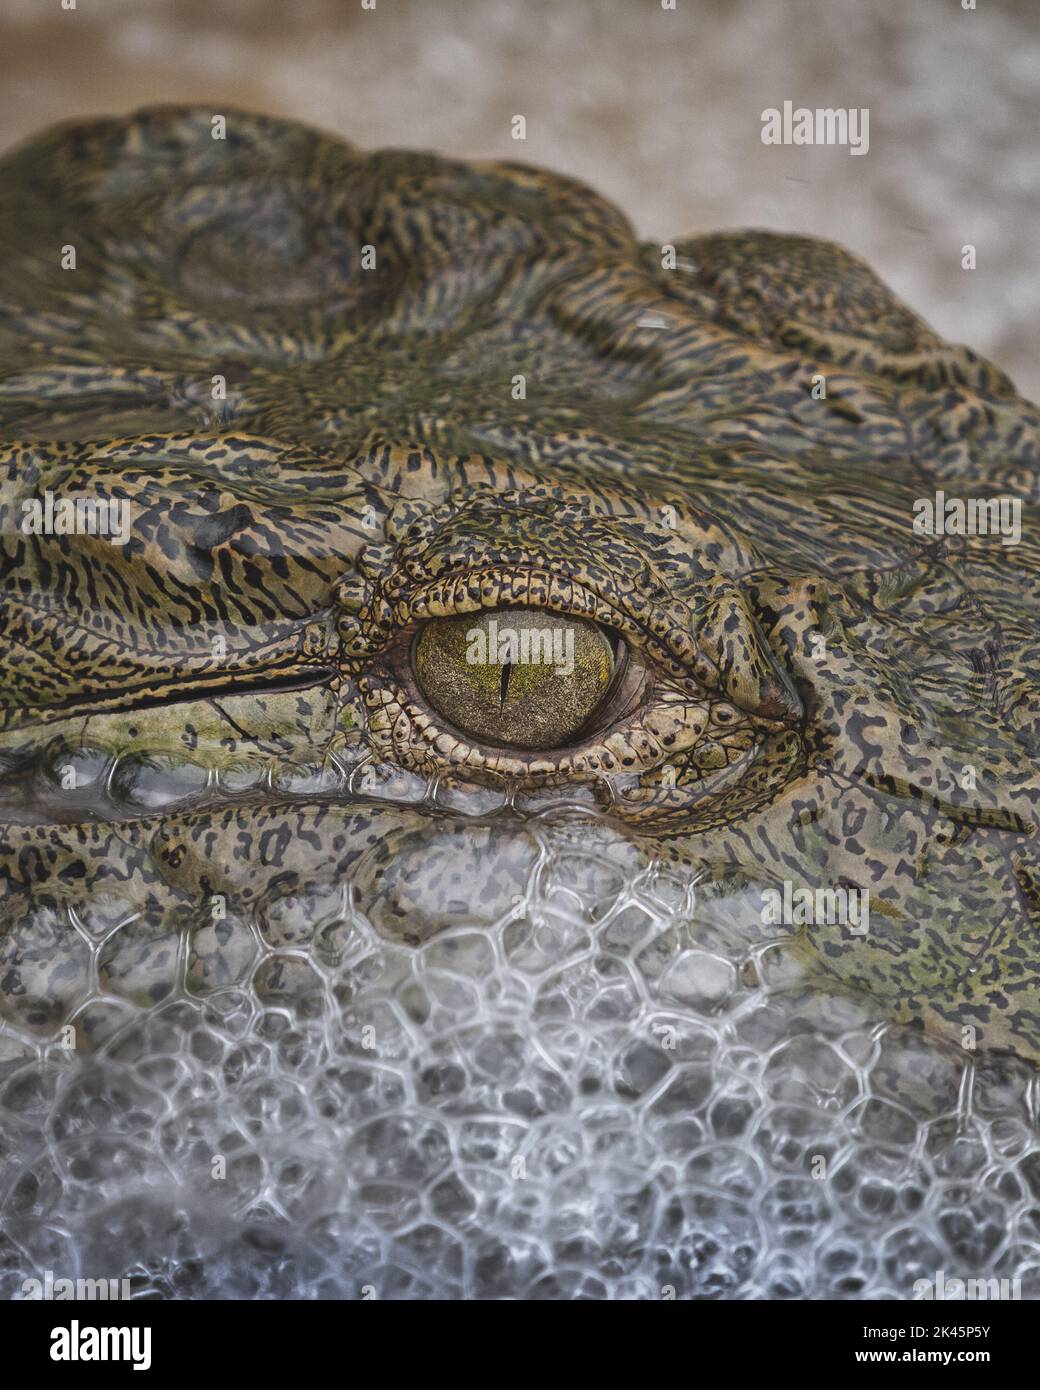 Un gros plan d'un œil de crocodile, Crocodylus niloticus, avec des bulles d'eau se formant autour de son visage. Banque D'Images